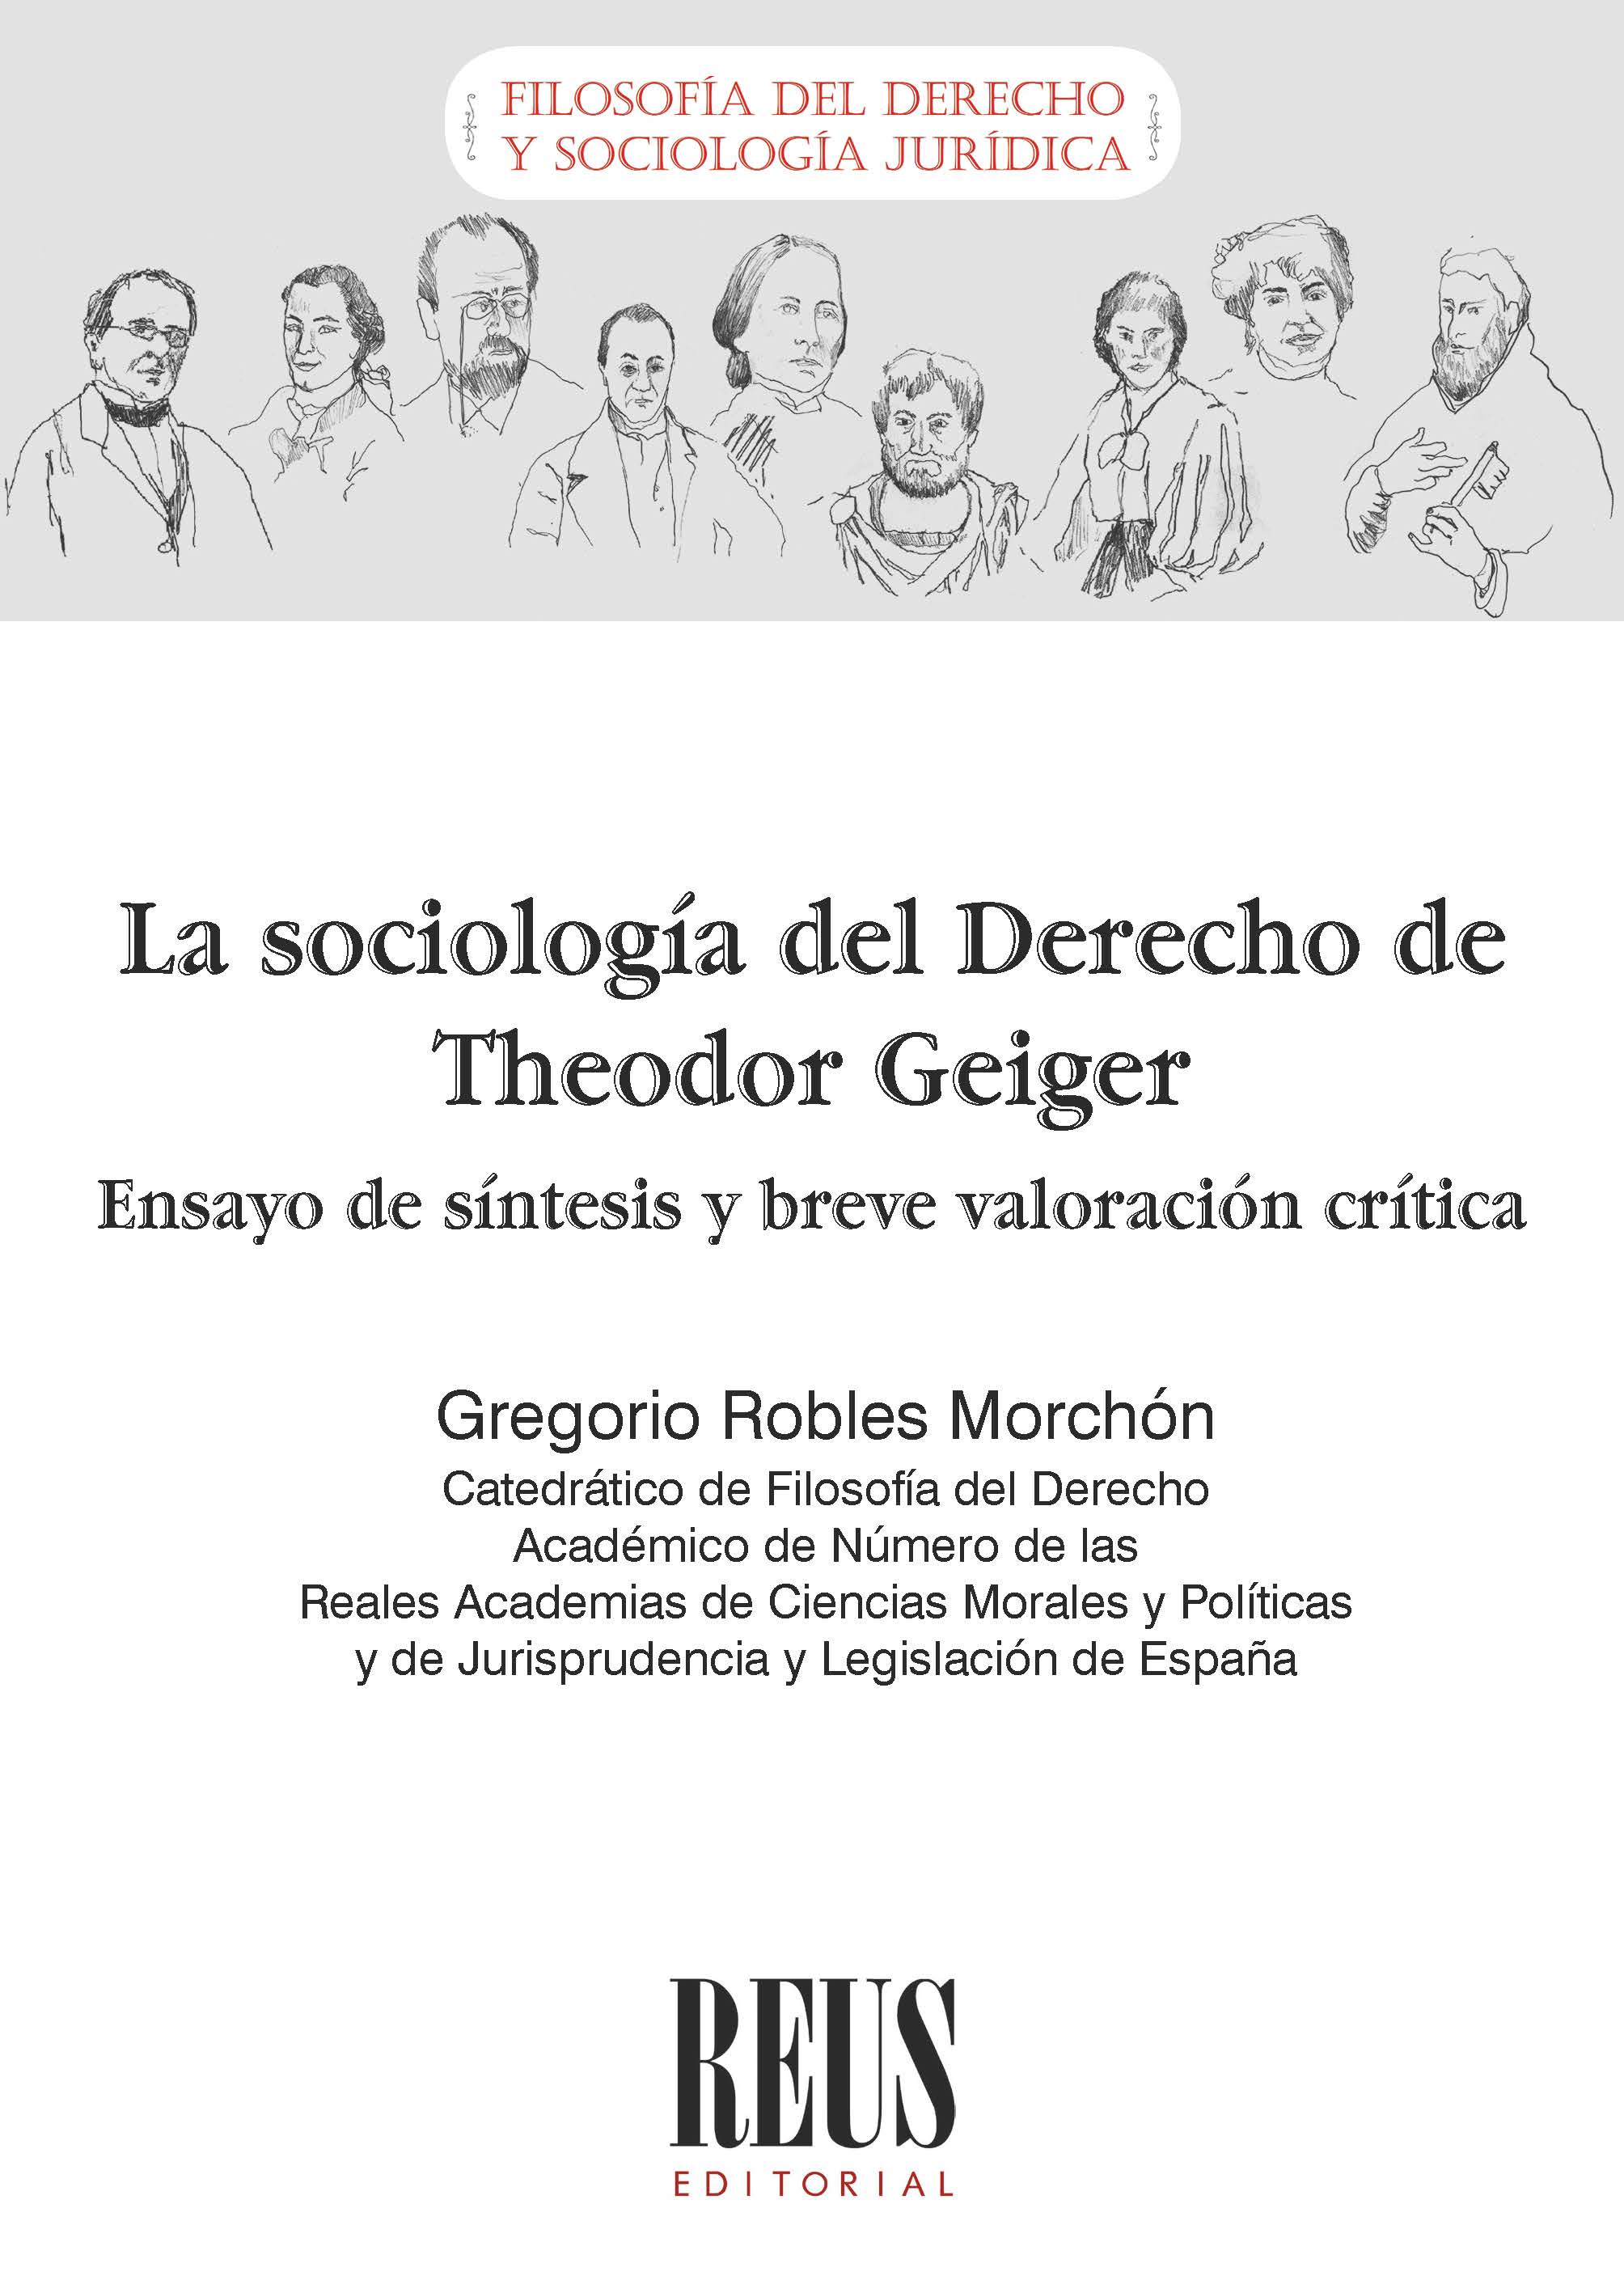 La sociología del Derecho de Theodor Geiger 